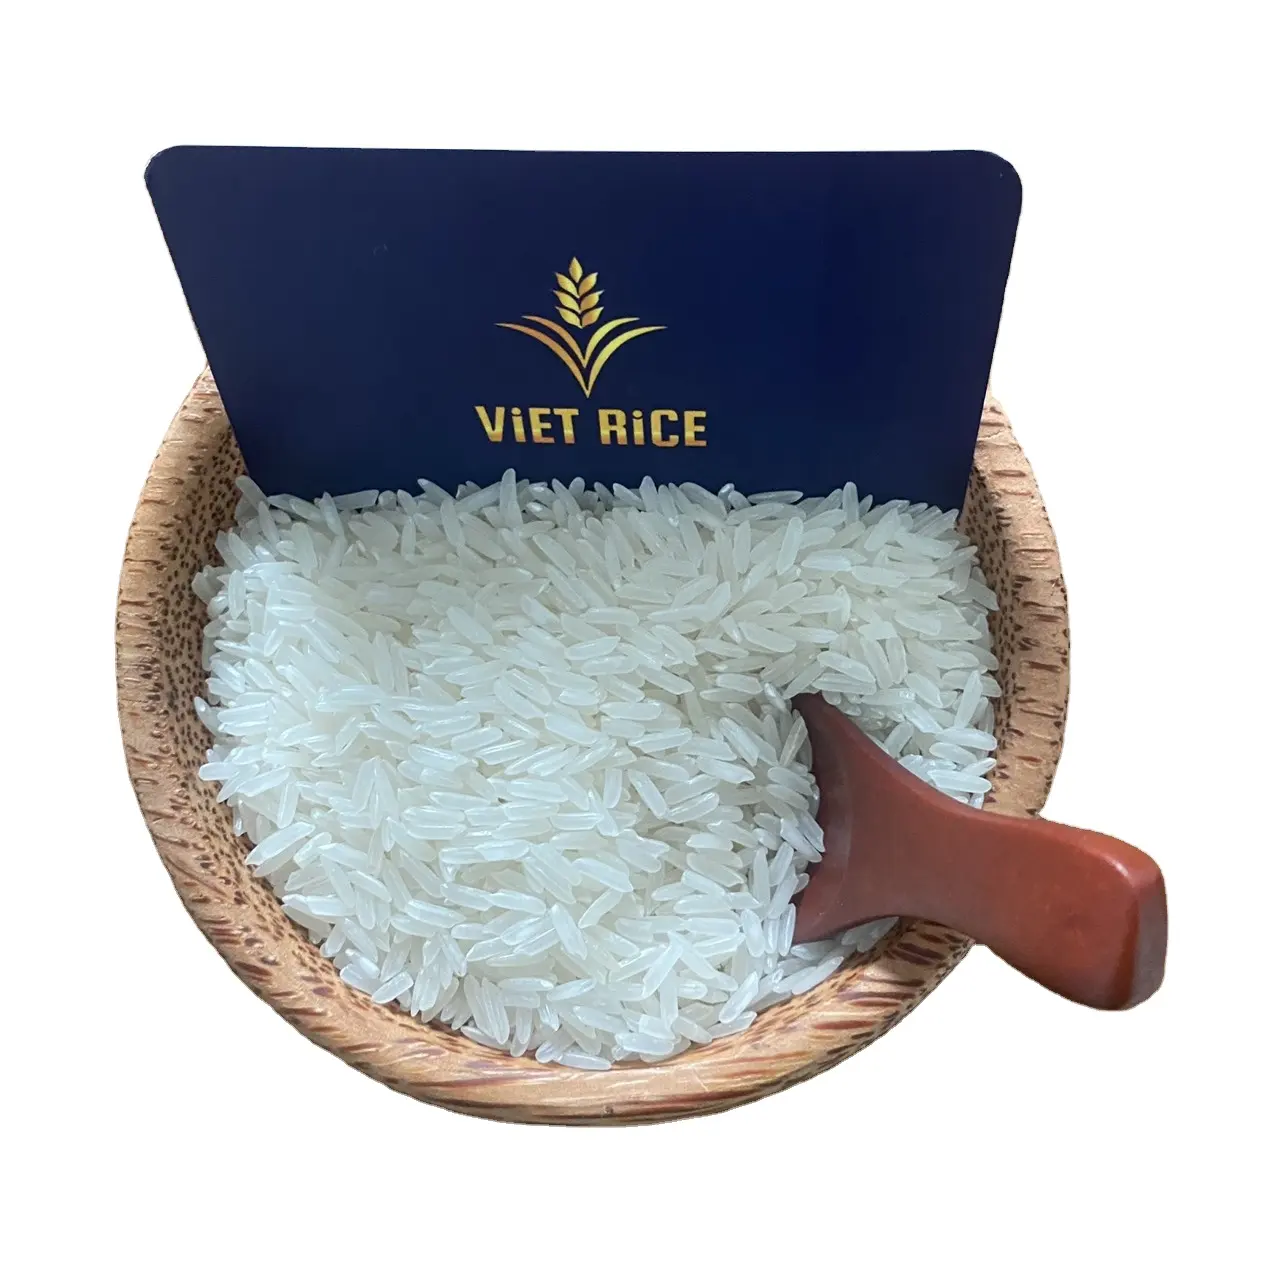 Reis KDM in Vietnam produziert exportiert weltweit Kontakt für einen guten Preis bestellen. Kontaktieren Sie WhatsApp +84 962605191